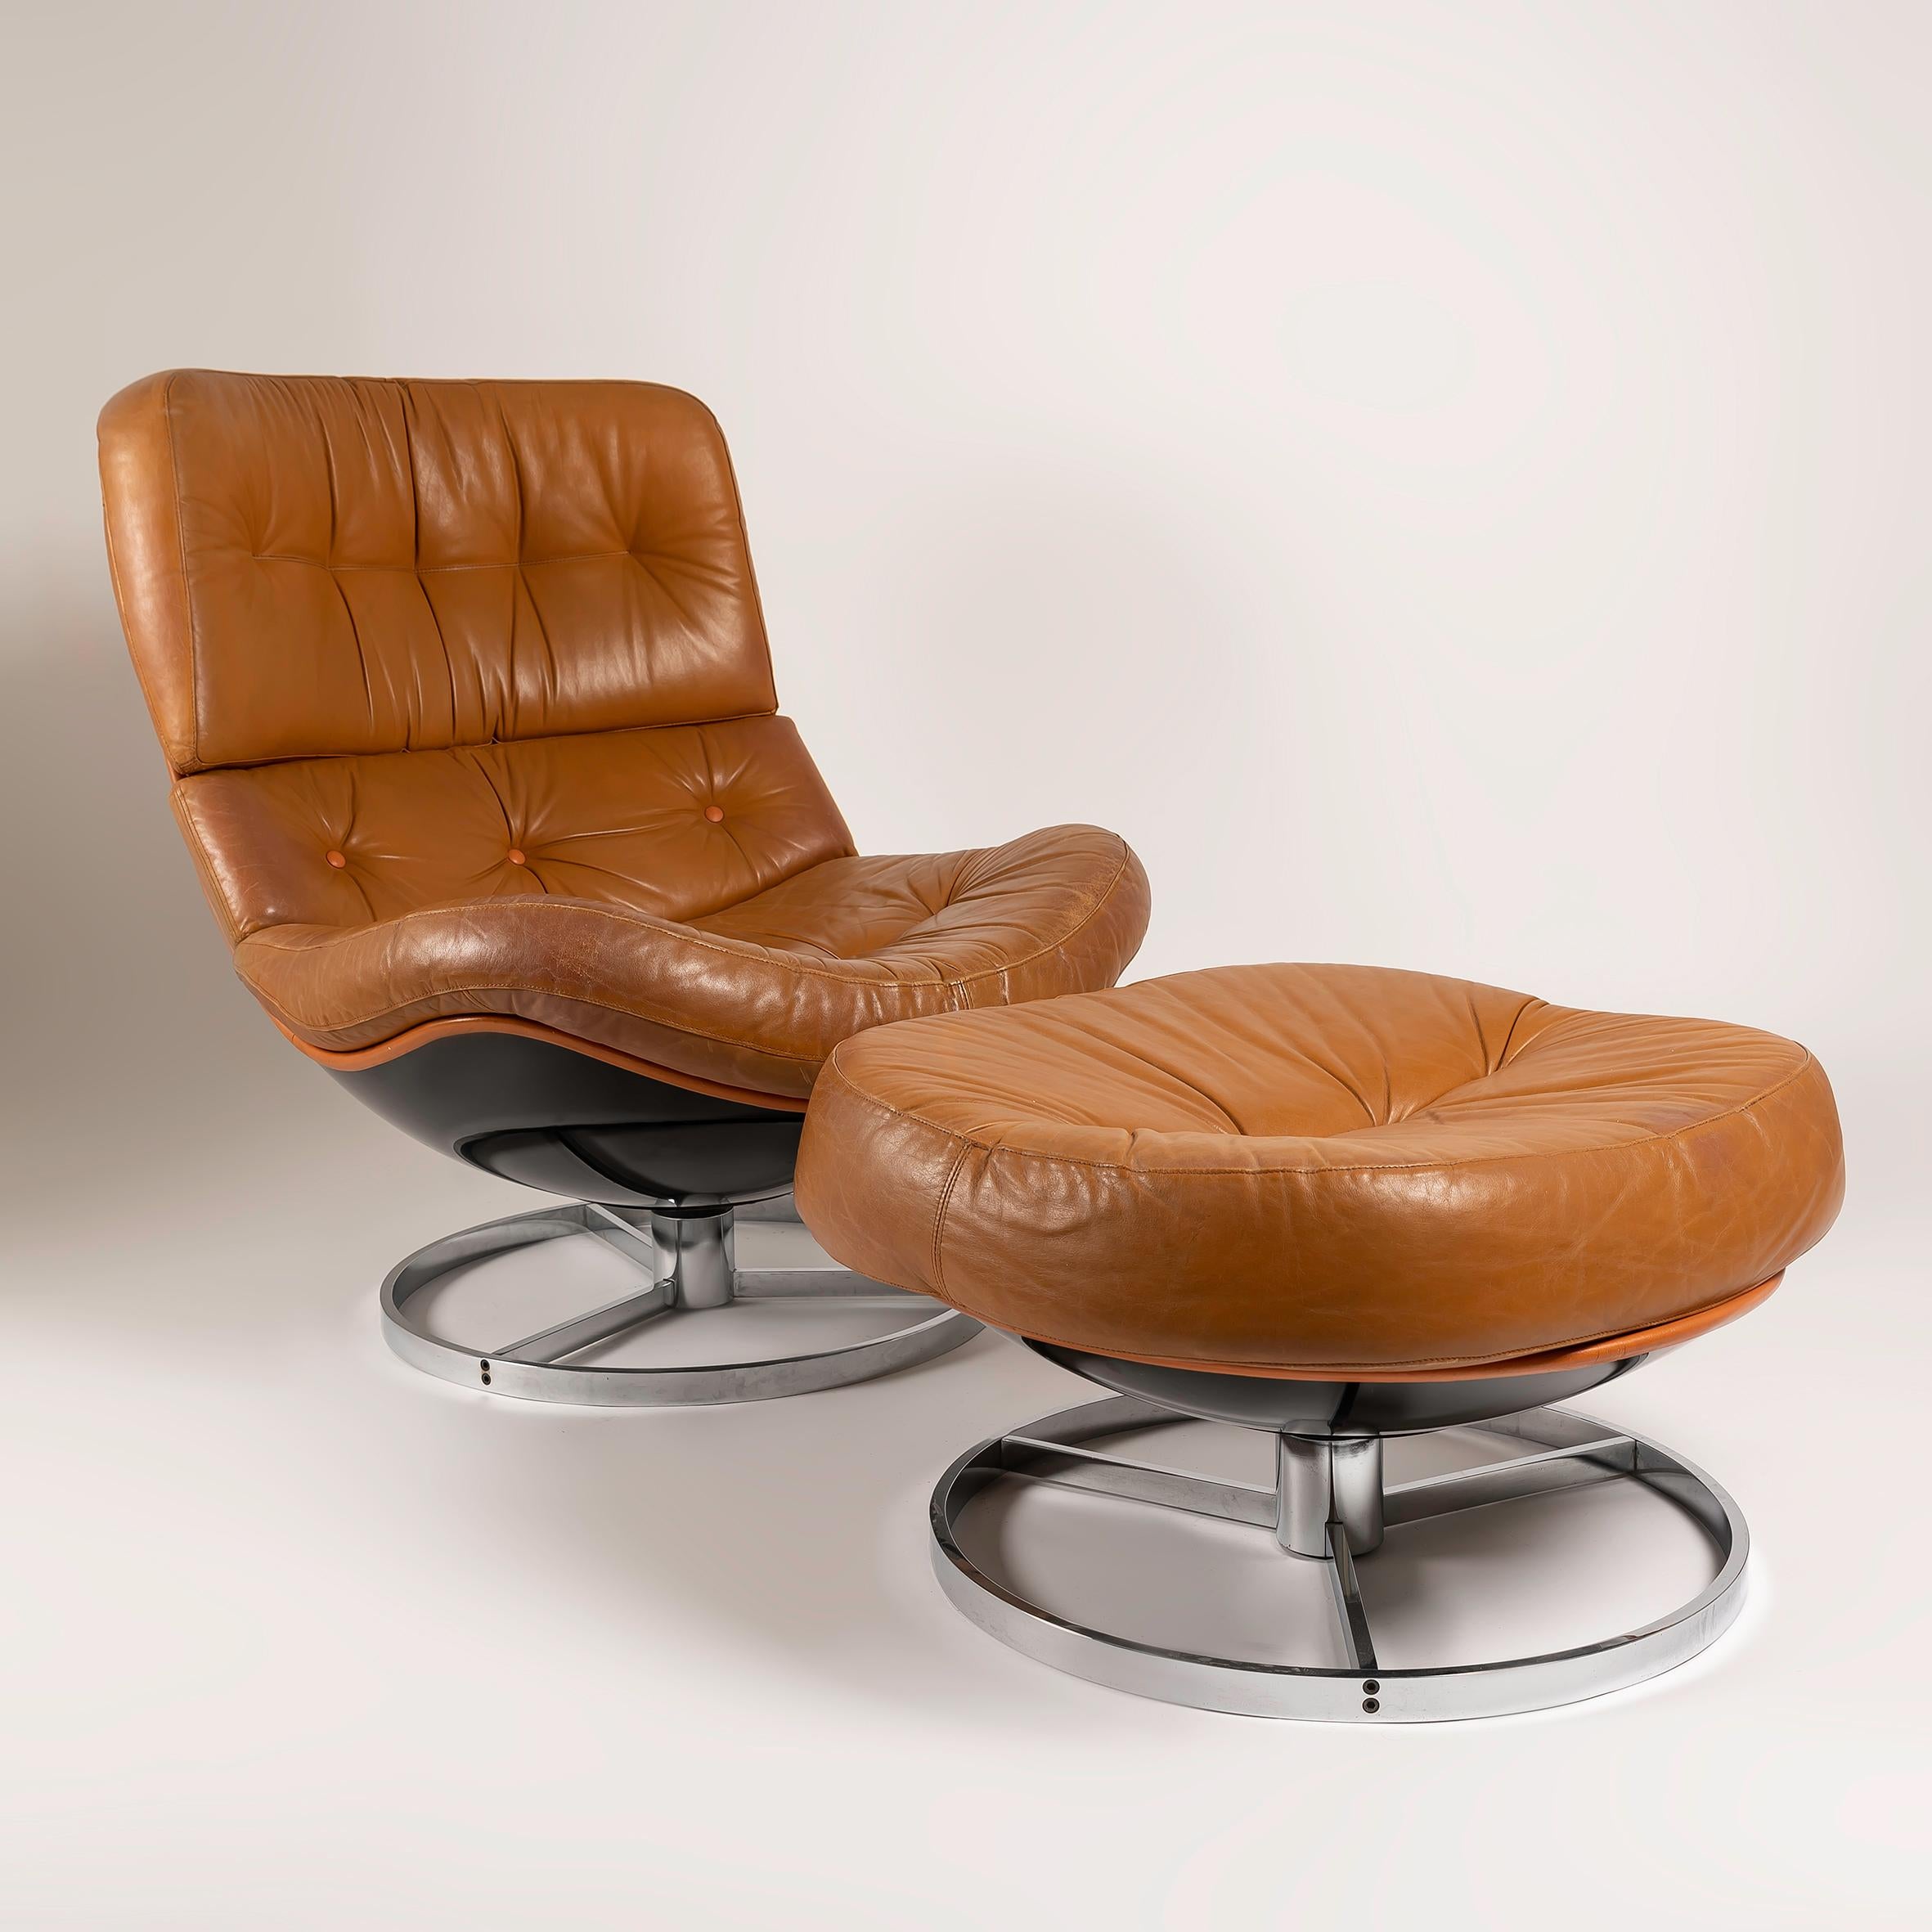 Découvrez l'incarnation du charme du milieu du siècle avec cet exquis ensemble de 2 fauteuils pivotants vintage de Michel Cadestin + 1 Otomana, fabriqués et distribués à l'origine par Airborne dans les années 1970. Réputés pour leur élégance